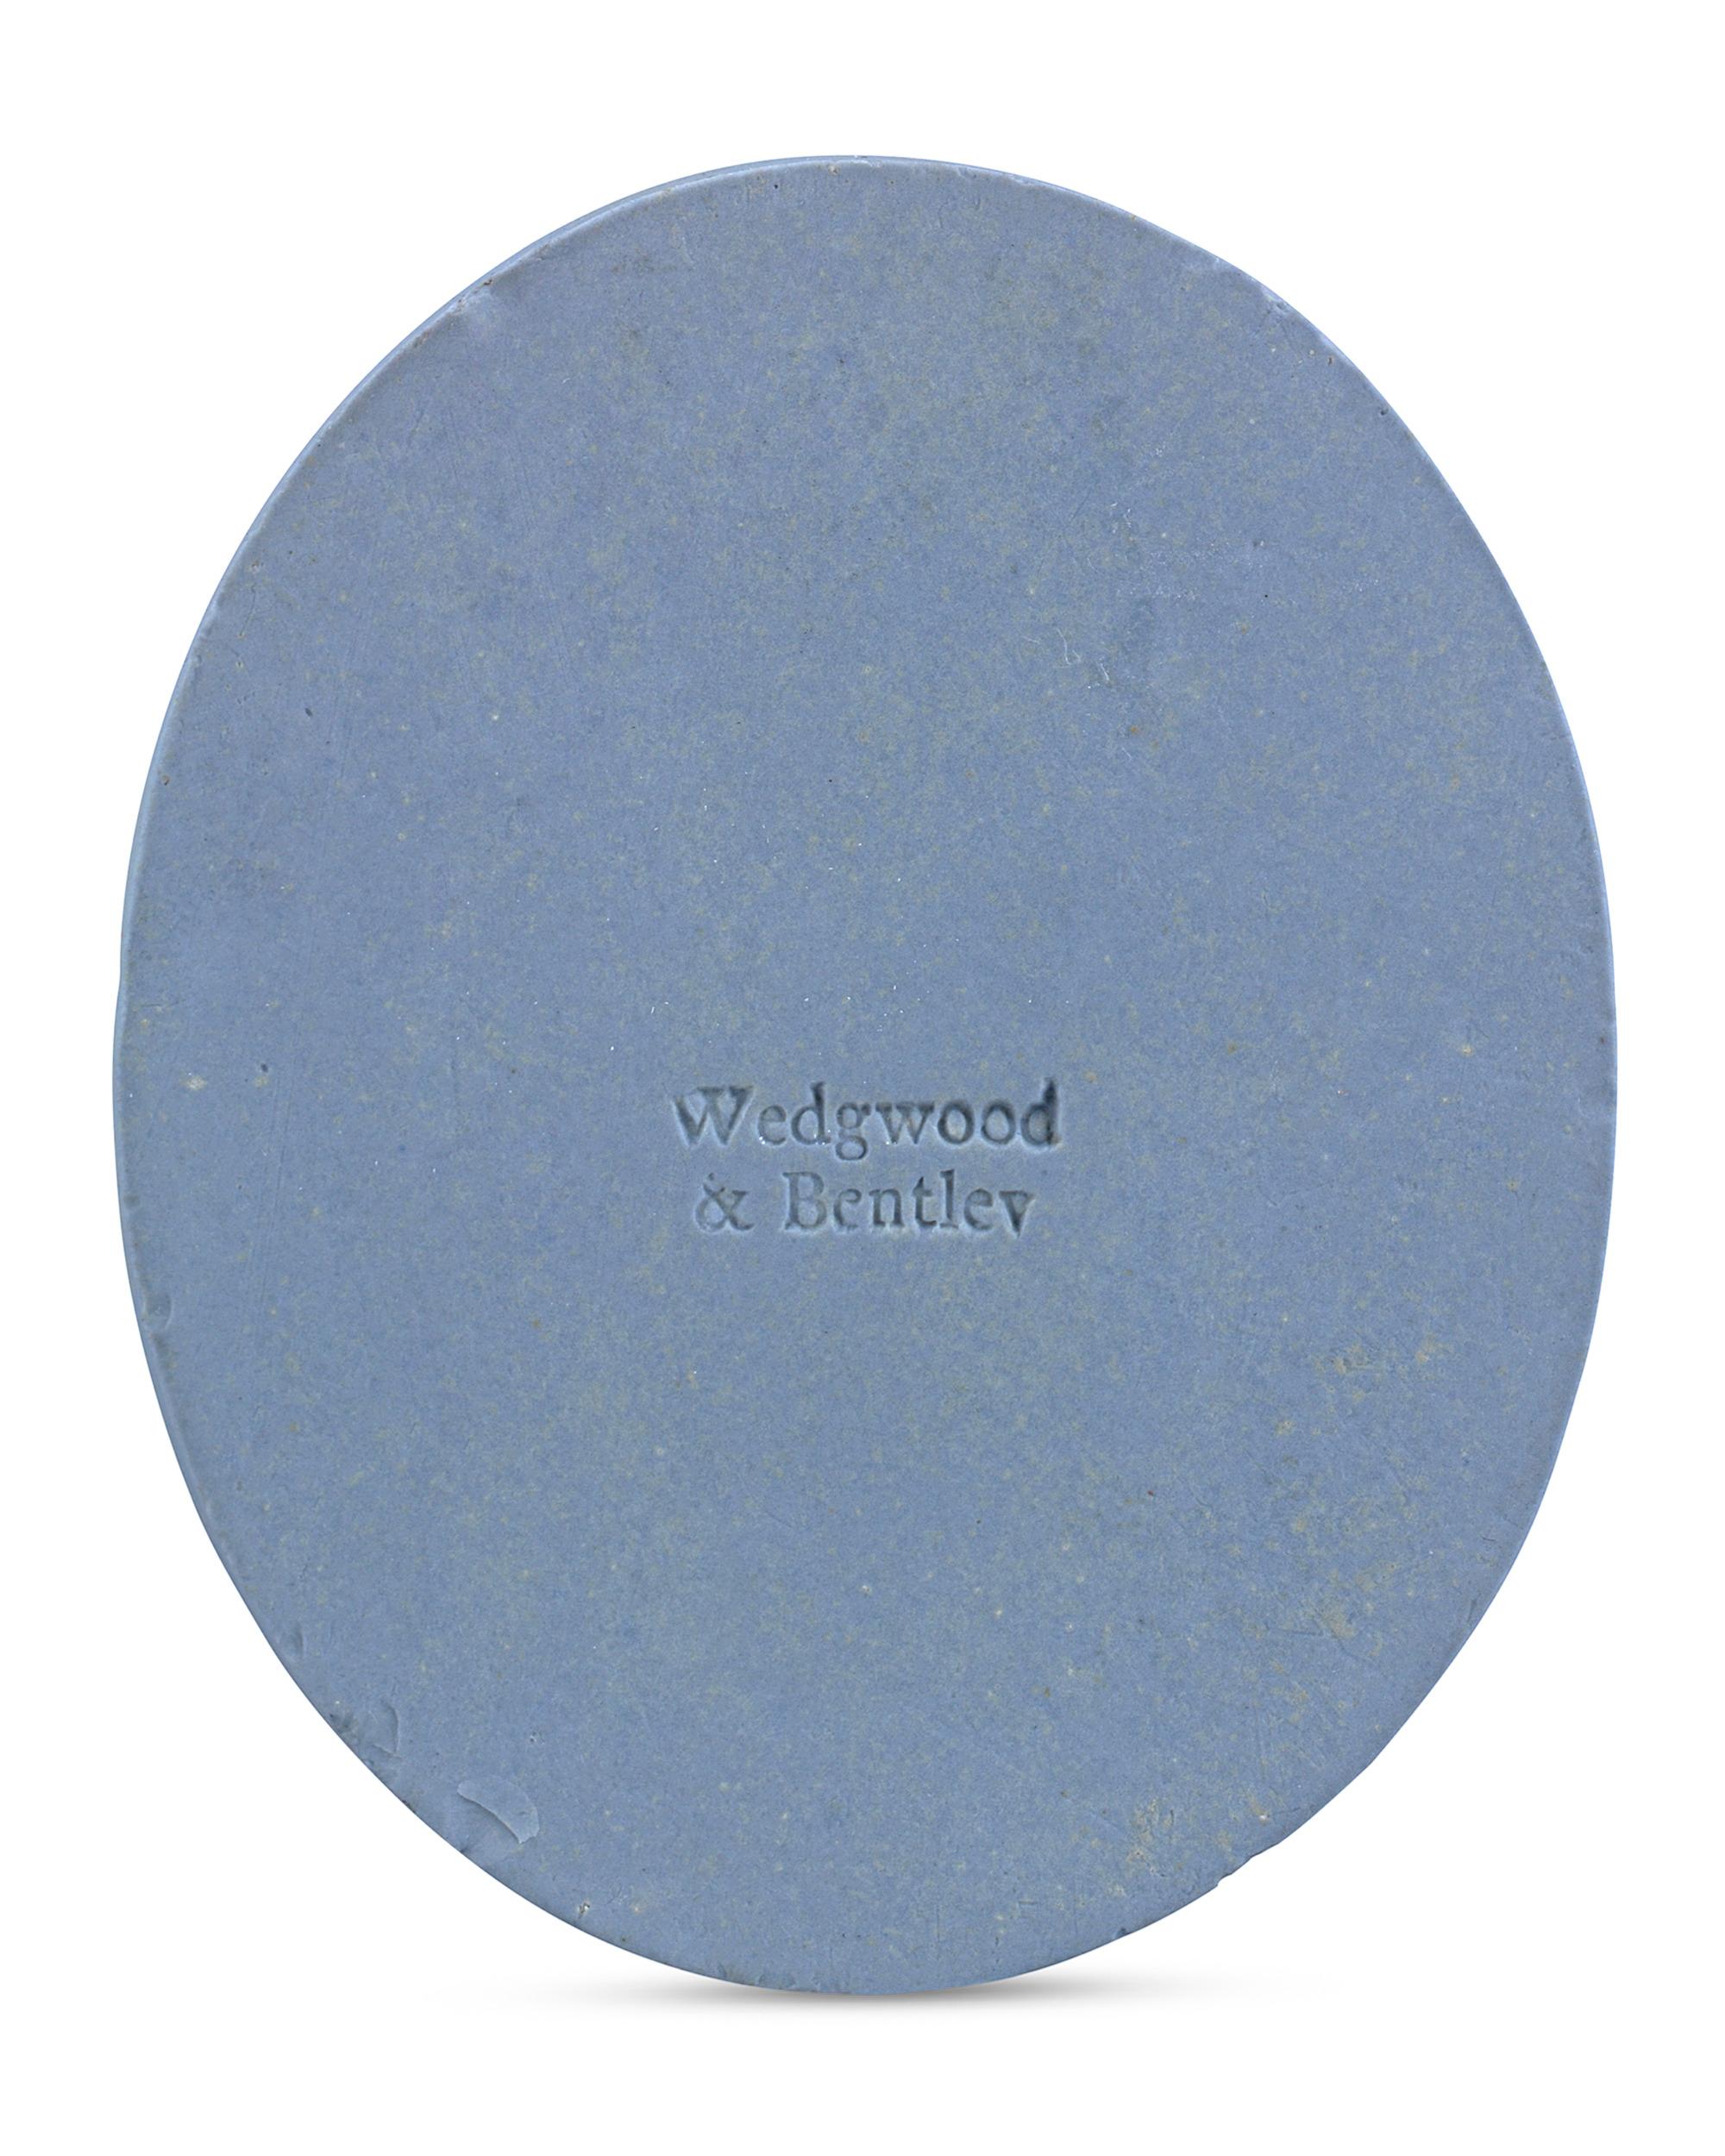 Cette exceptionnelle plaque en jaspe bleu et blanc de Wedgwood & Bentley représente l'écrivain, philosophe et compositeur genevois Jean-Jacques Rousseau. Certains des travaux les plus méticuleux de Wedgwood ont été exécutés sous forme de camées et